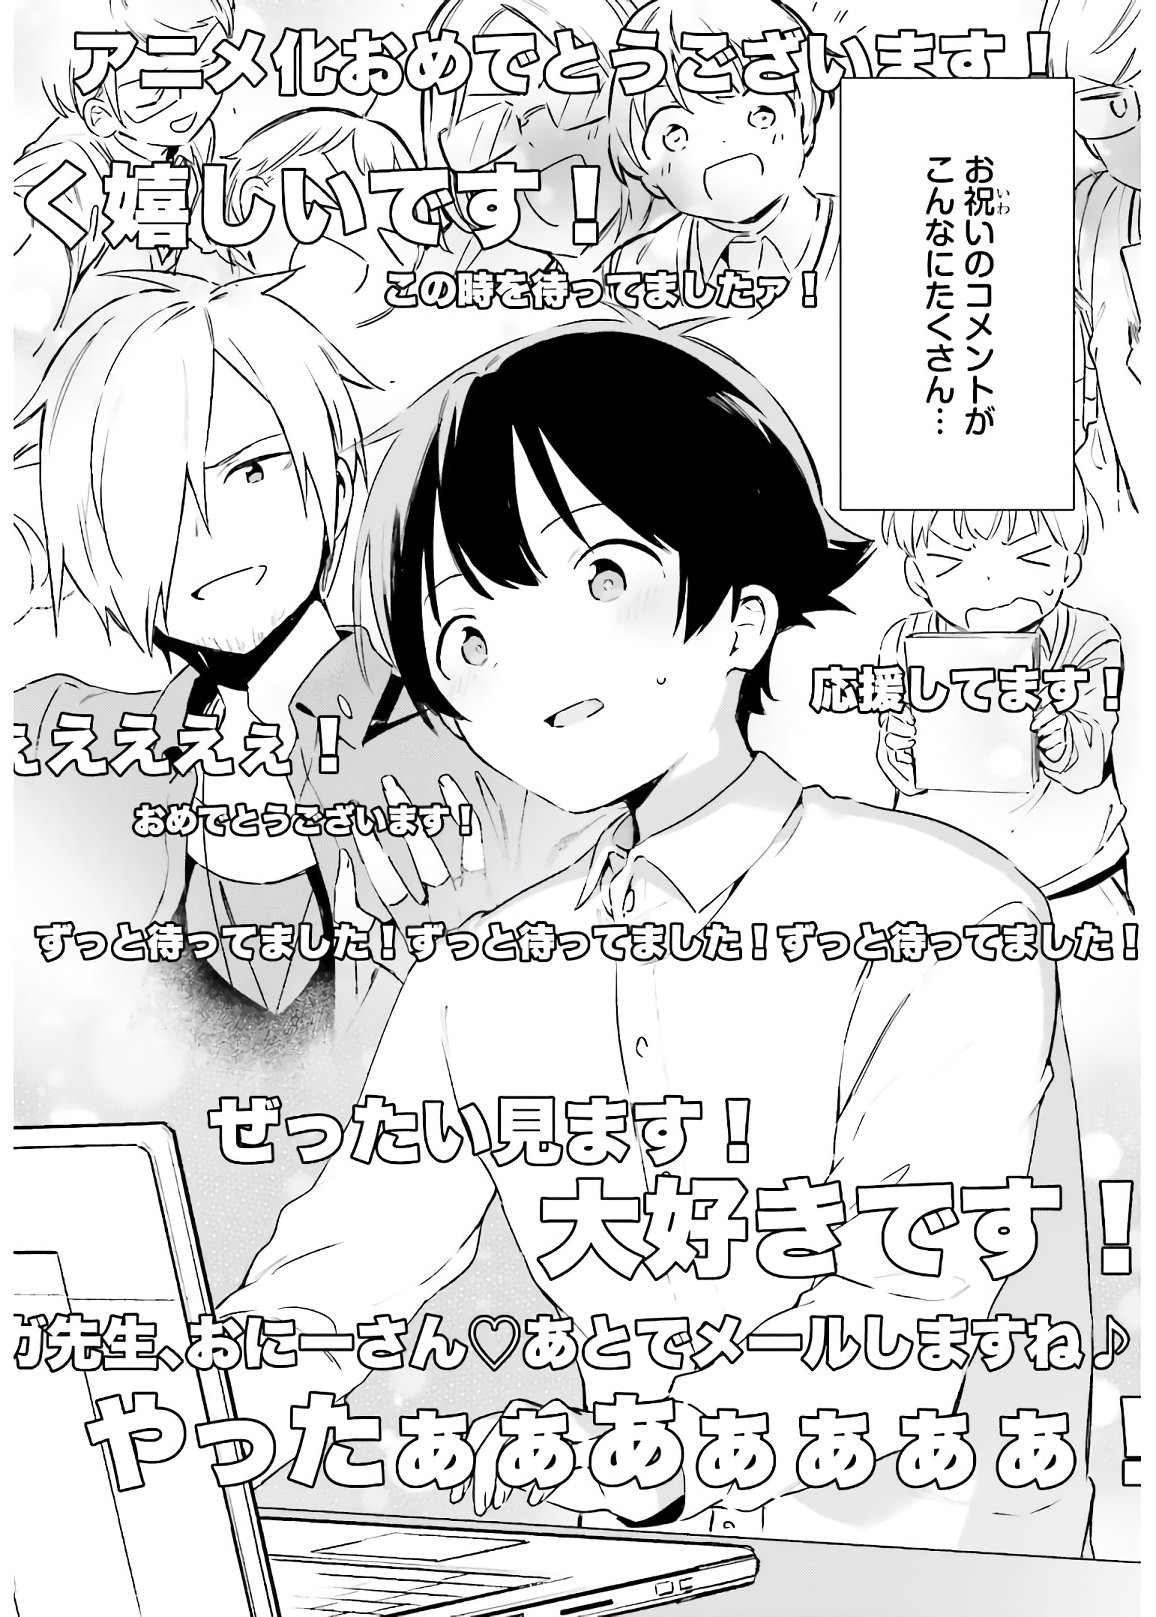 Ero Manga Sensei - Chapter 74 - Page 38